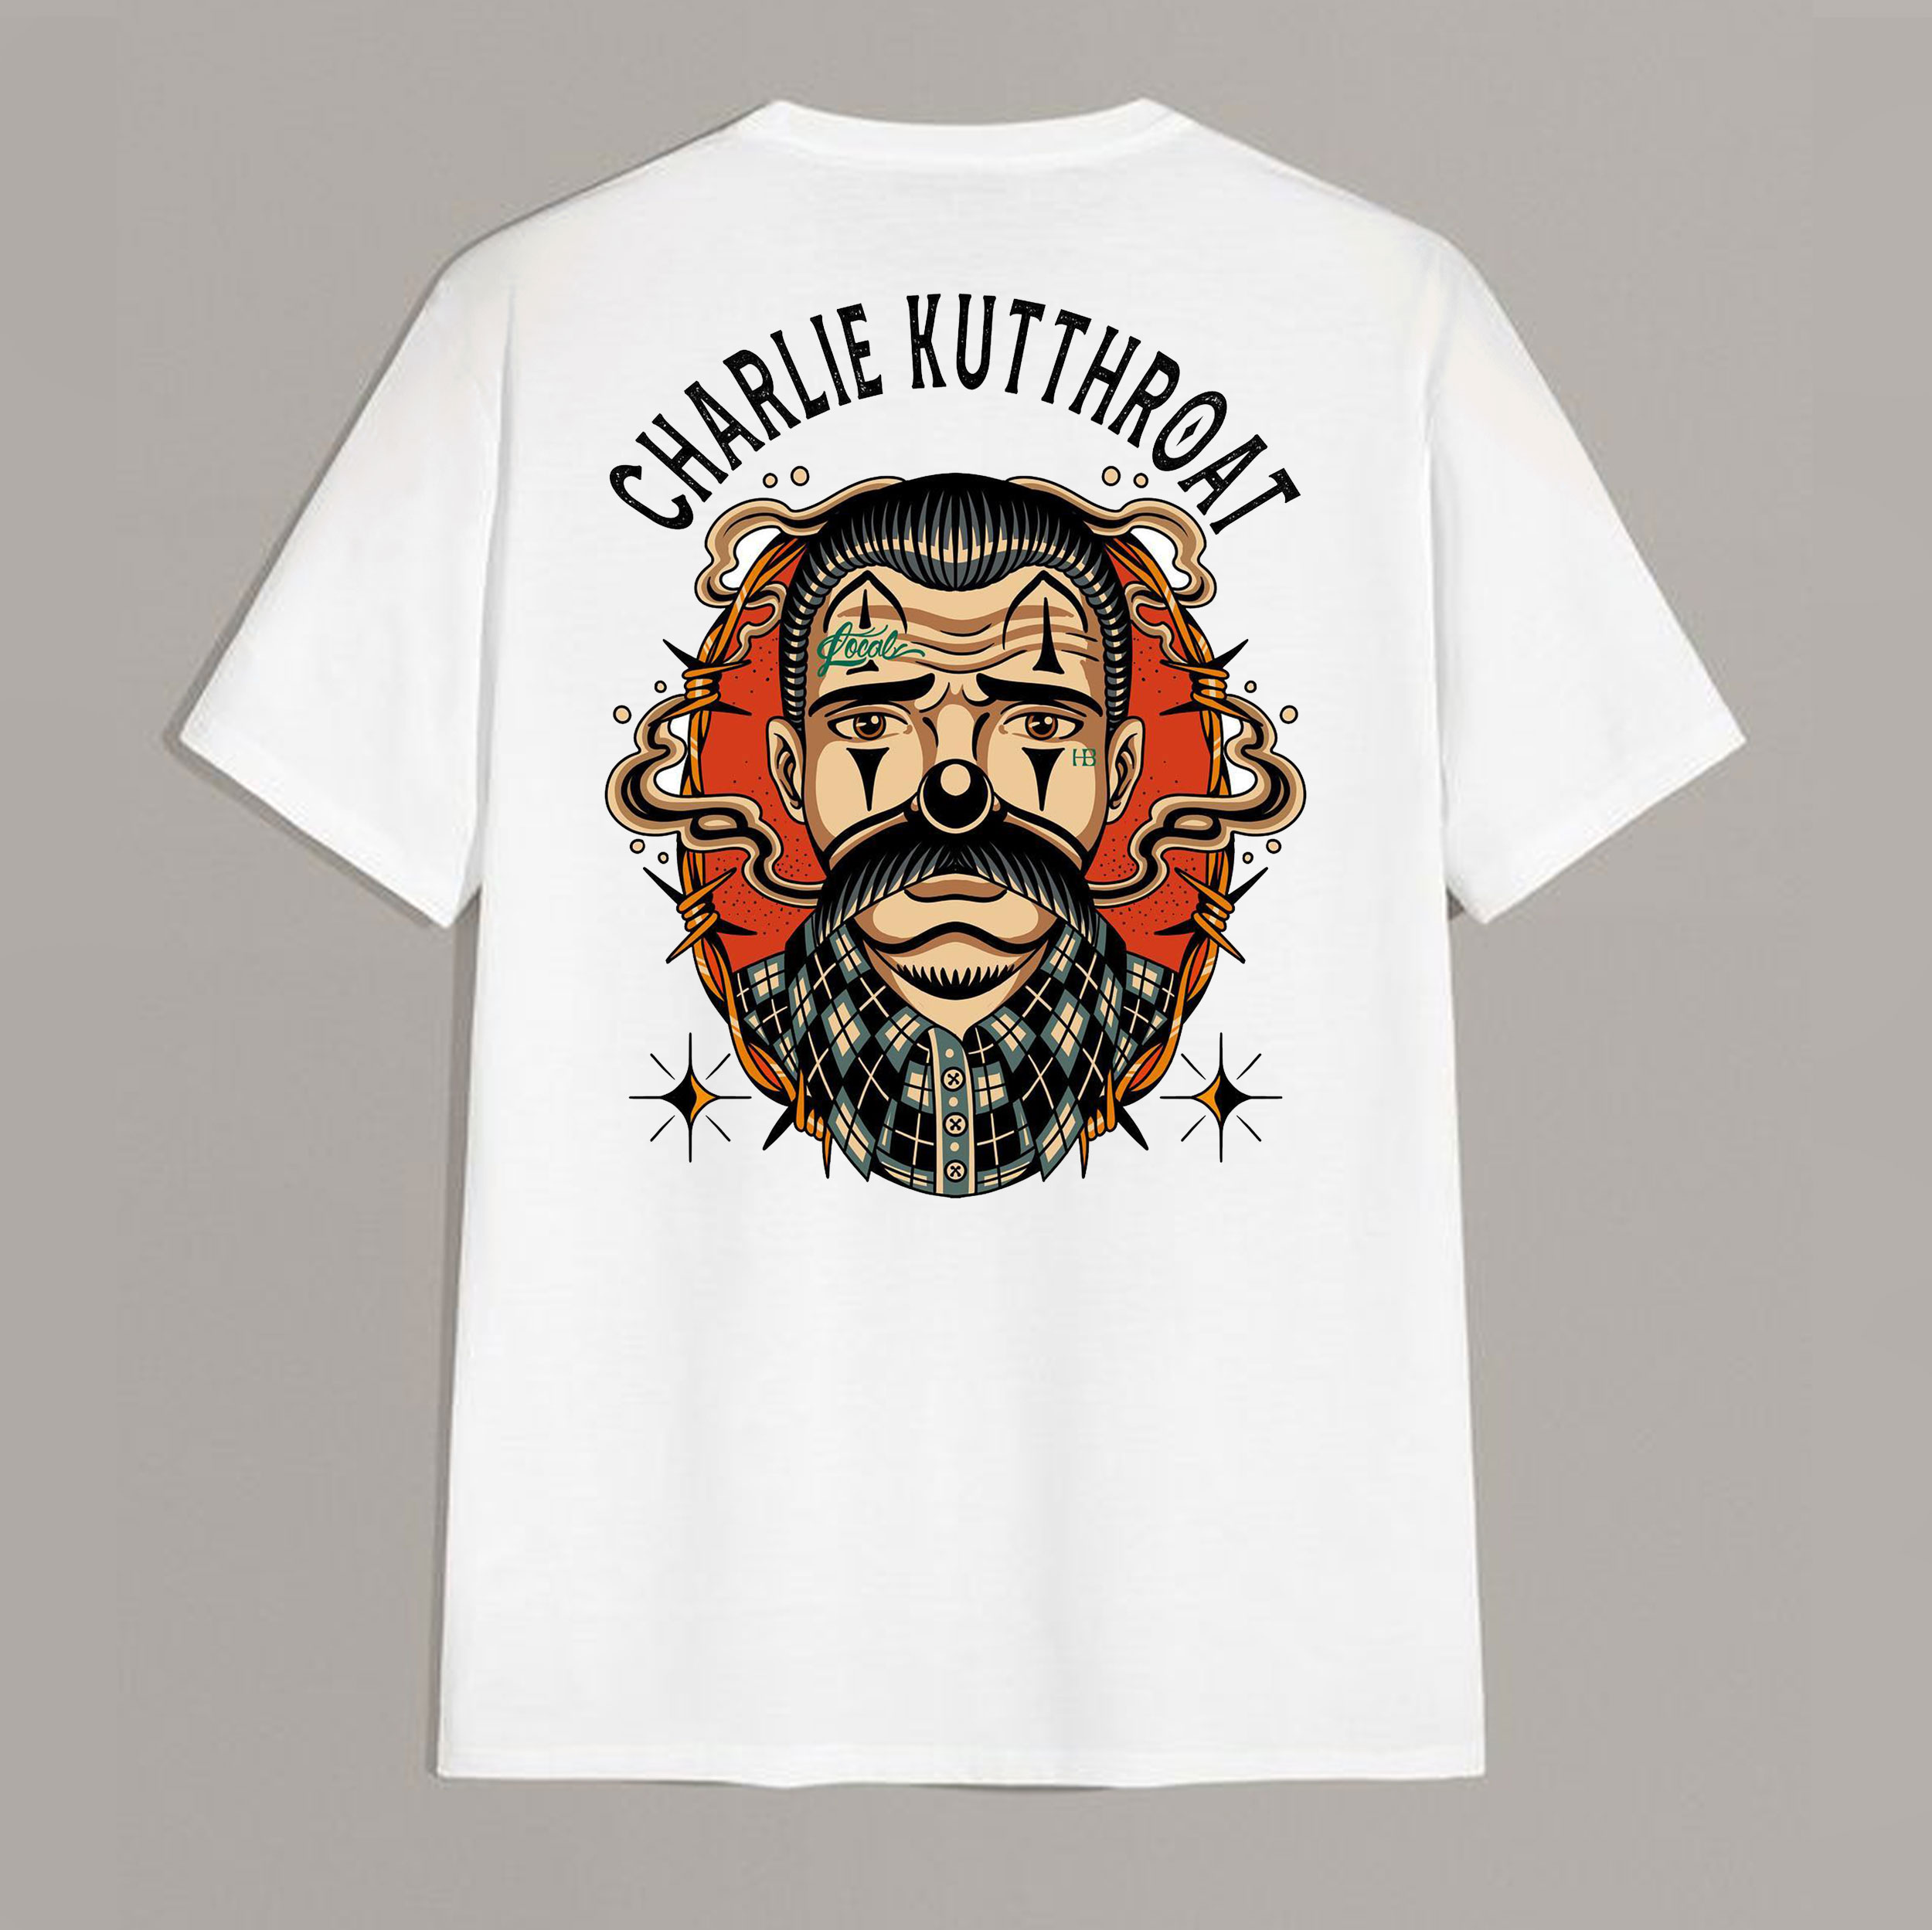 CHARLIE KUTTHROAT Bearded Man White Print T-Shirt